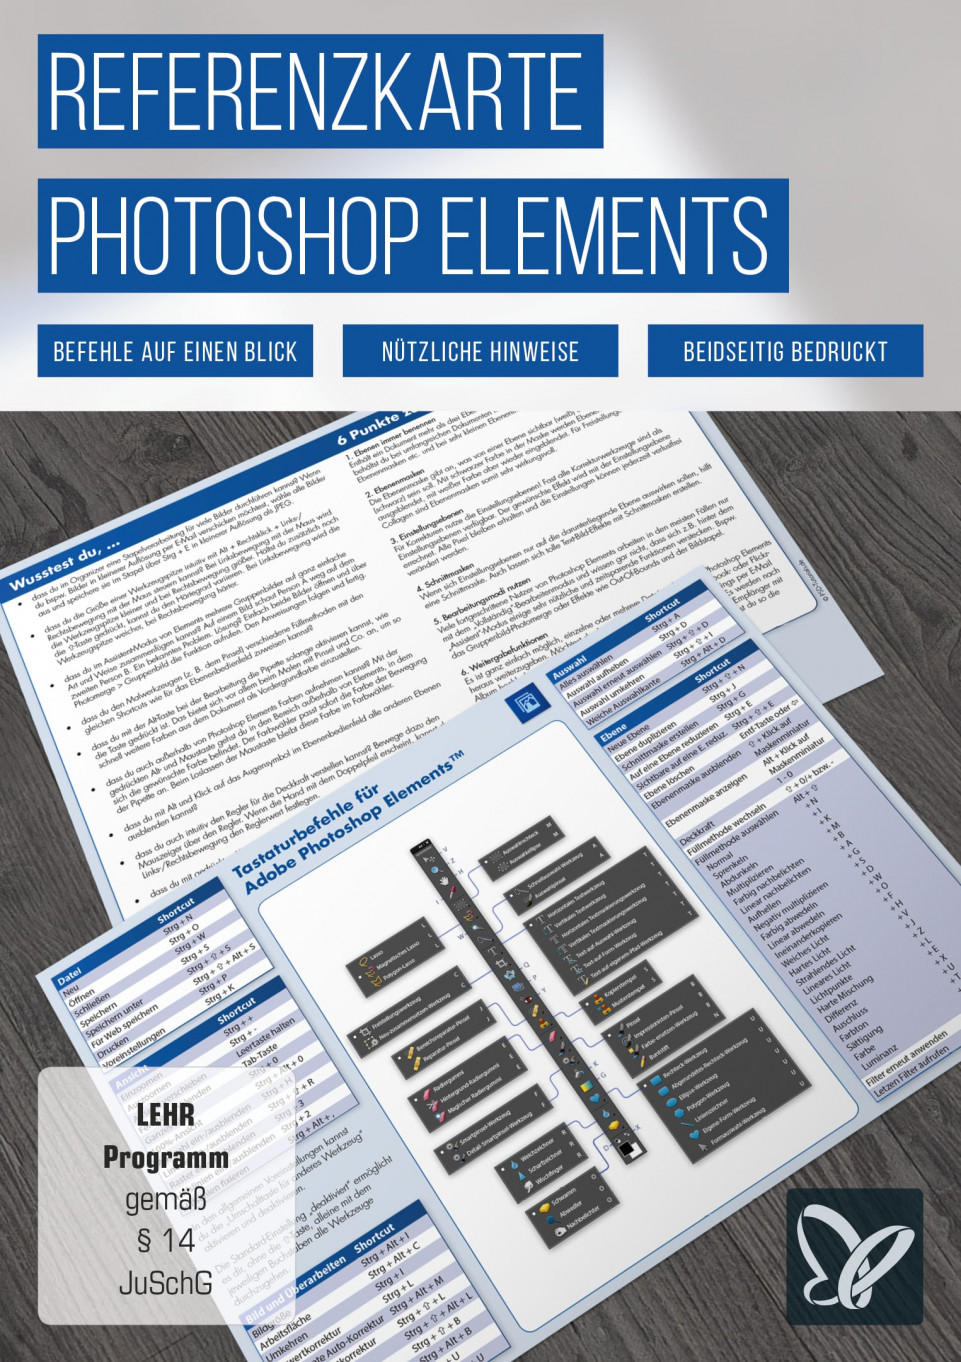 Referenzkarte für Photoshop Elements